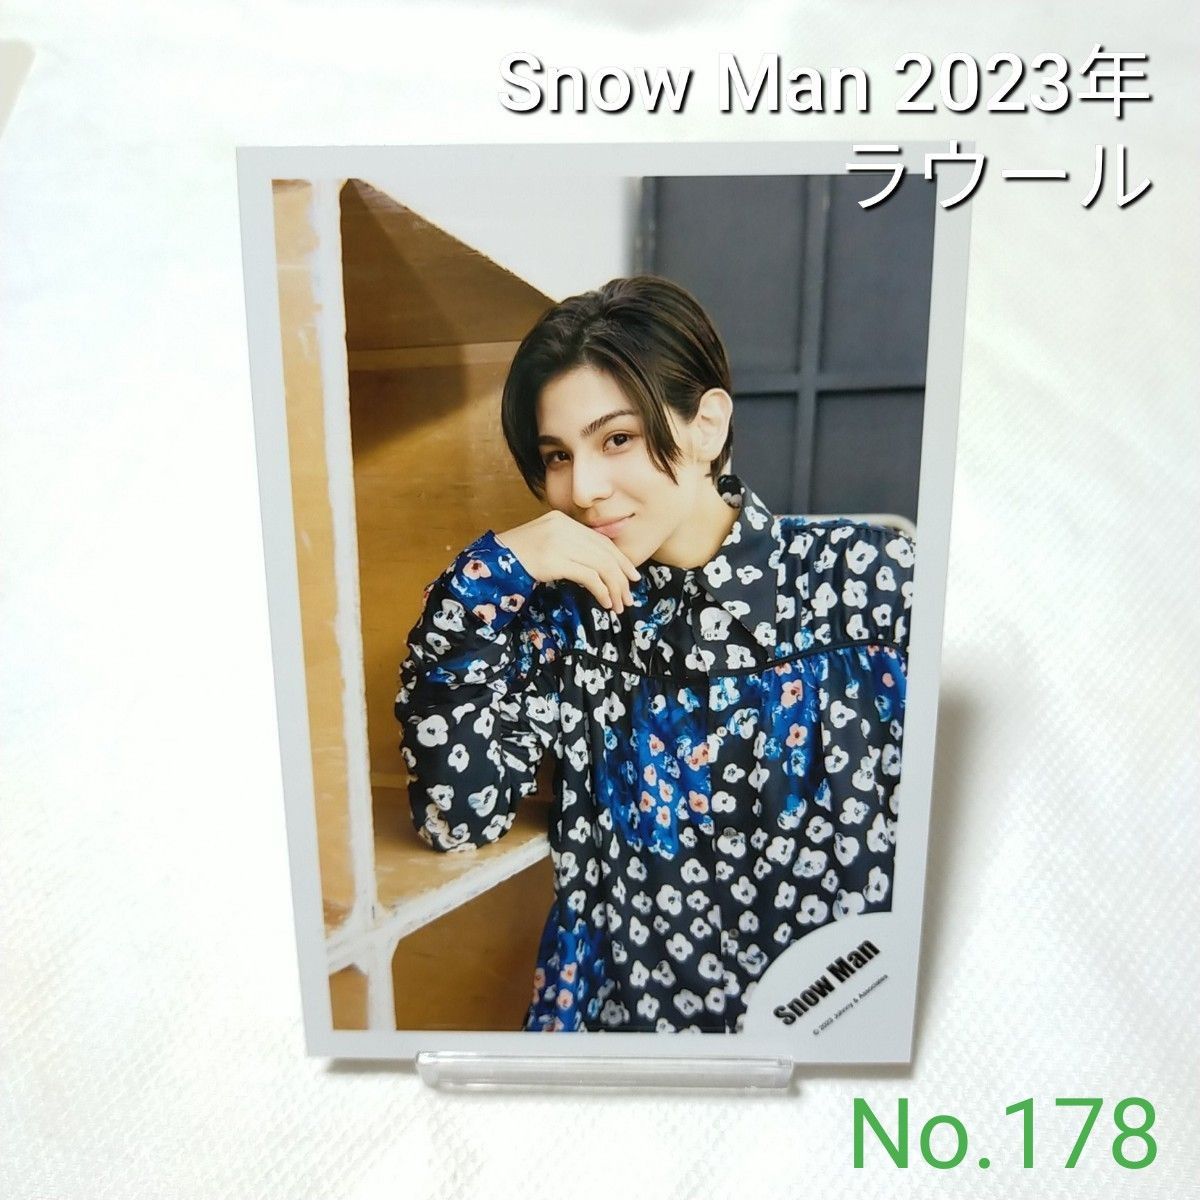 178 Snow Man ラウール 公式写真 スノーマン 2023年 